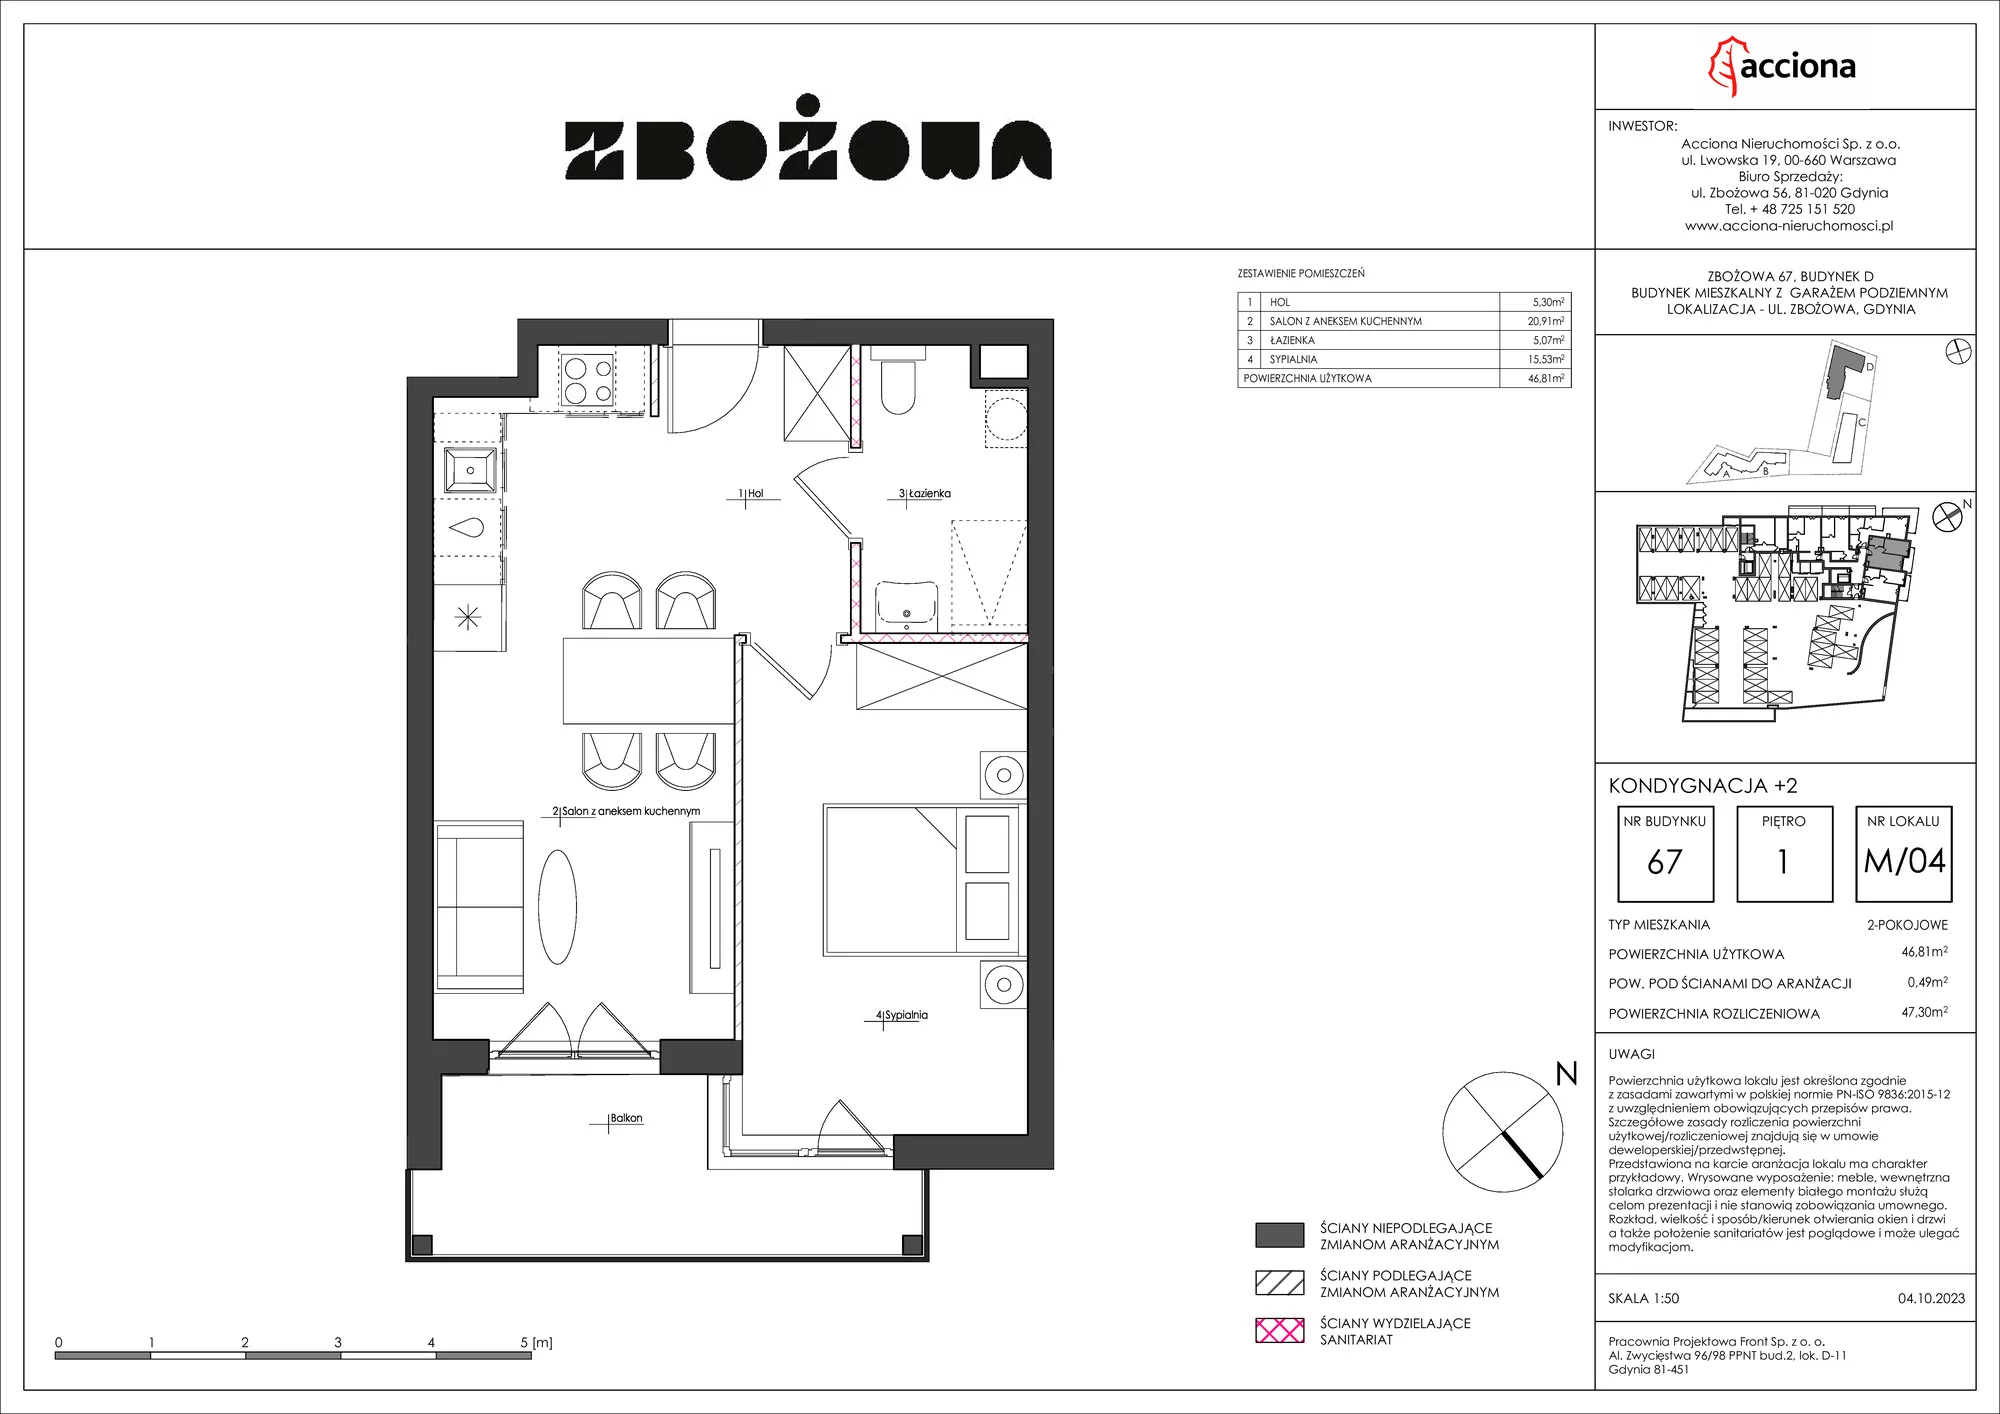 Mieszkanie 47,30 m², piętro 1, oferta nr 67.4, Zbożowa, Gdynia, Cisowa, ul. Zbożowa